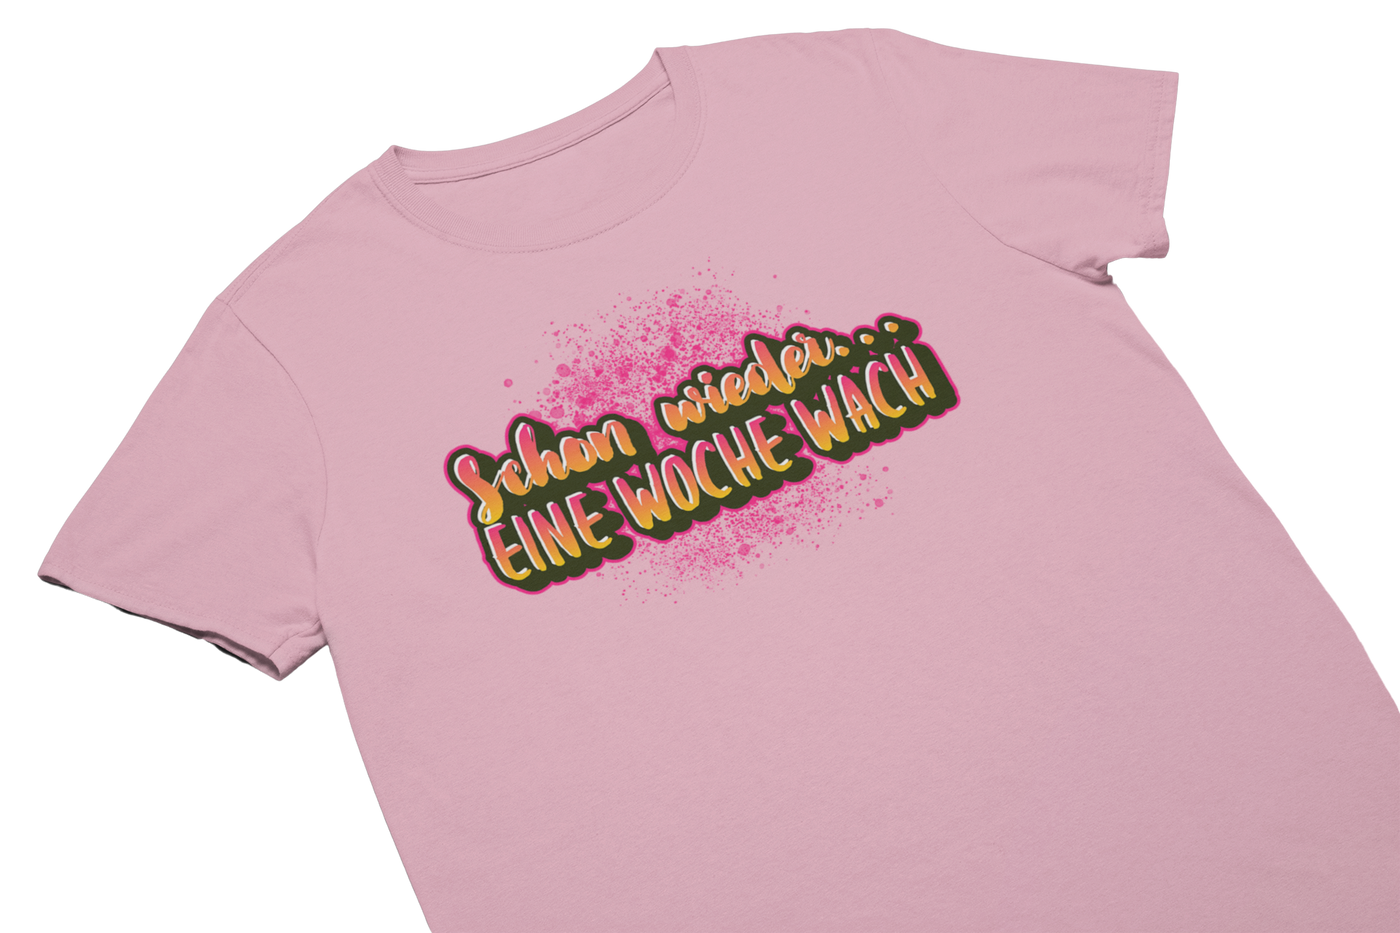 SCHON WIEDER EINE WOCHE WACH - T-Shirt Pink